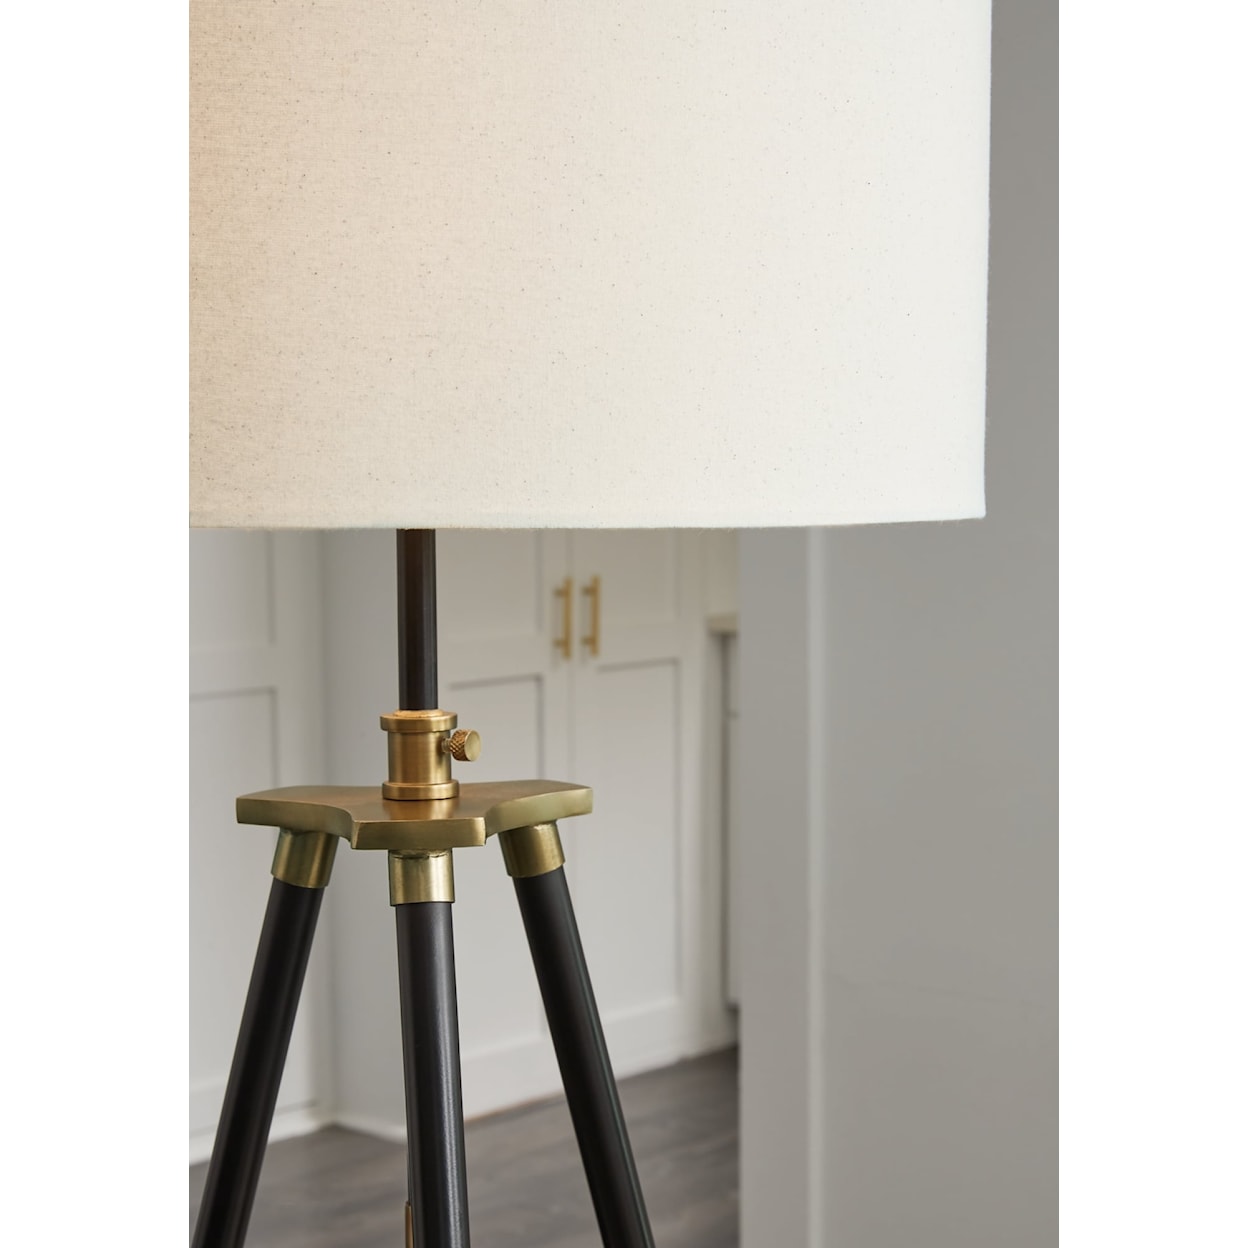 Ashley Furniture Signature Design Cashner Metal Floor Lamp